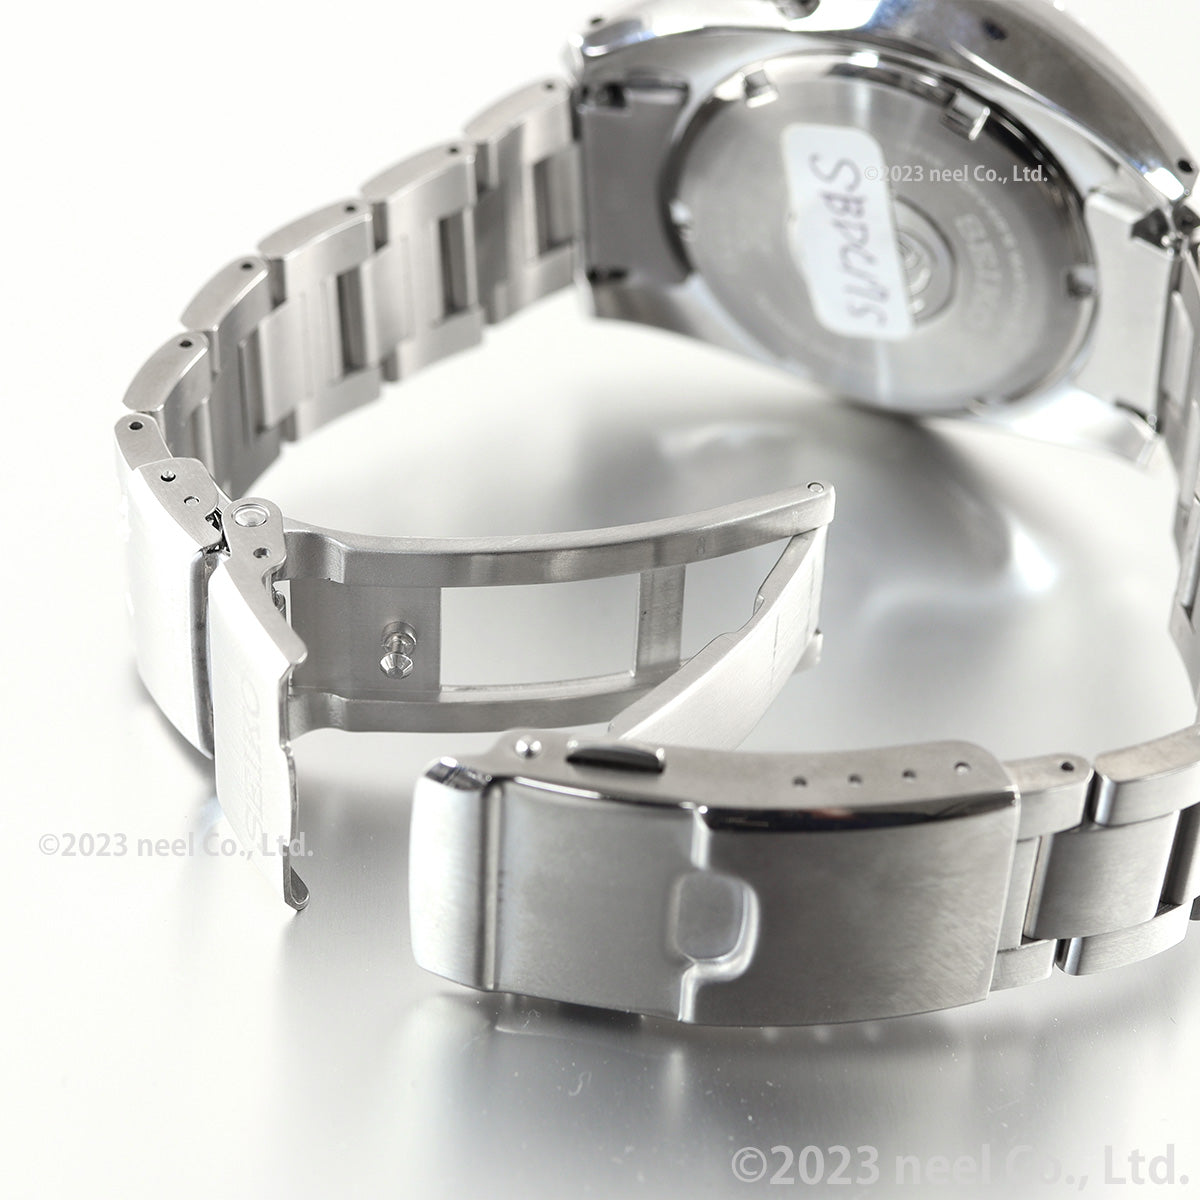 セイコー プロスペックス SEIKO PROSPEX ダイバースキューバ メカニカル 自動巻き コアショップ専用 流通限定 腕時計 メンズ SBDC175